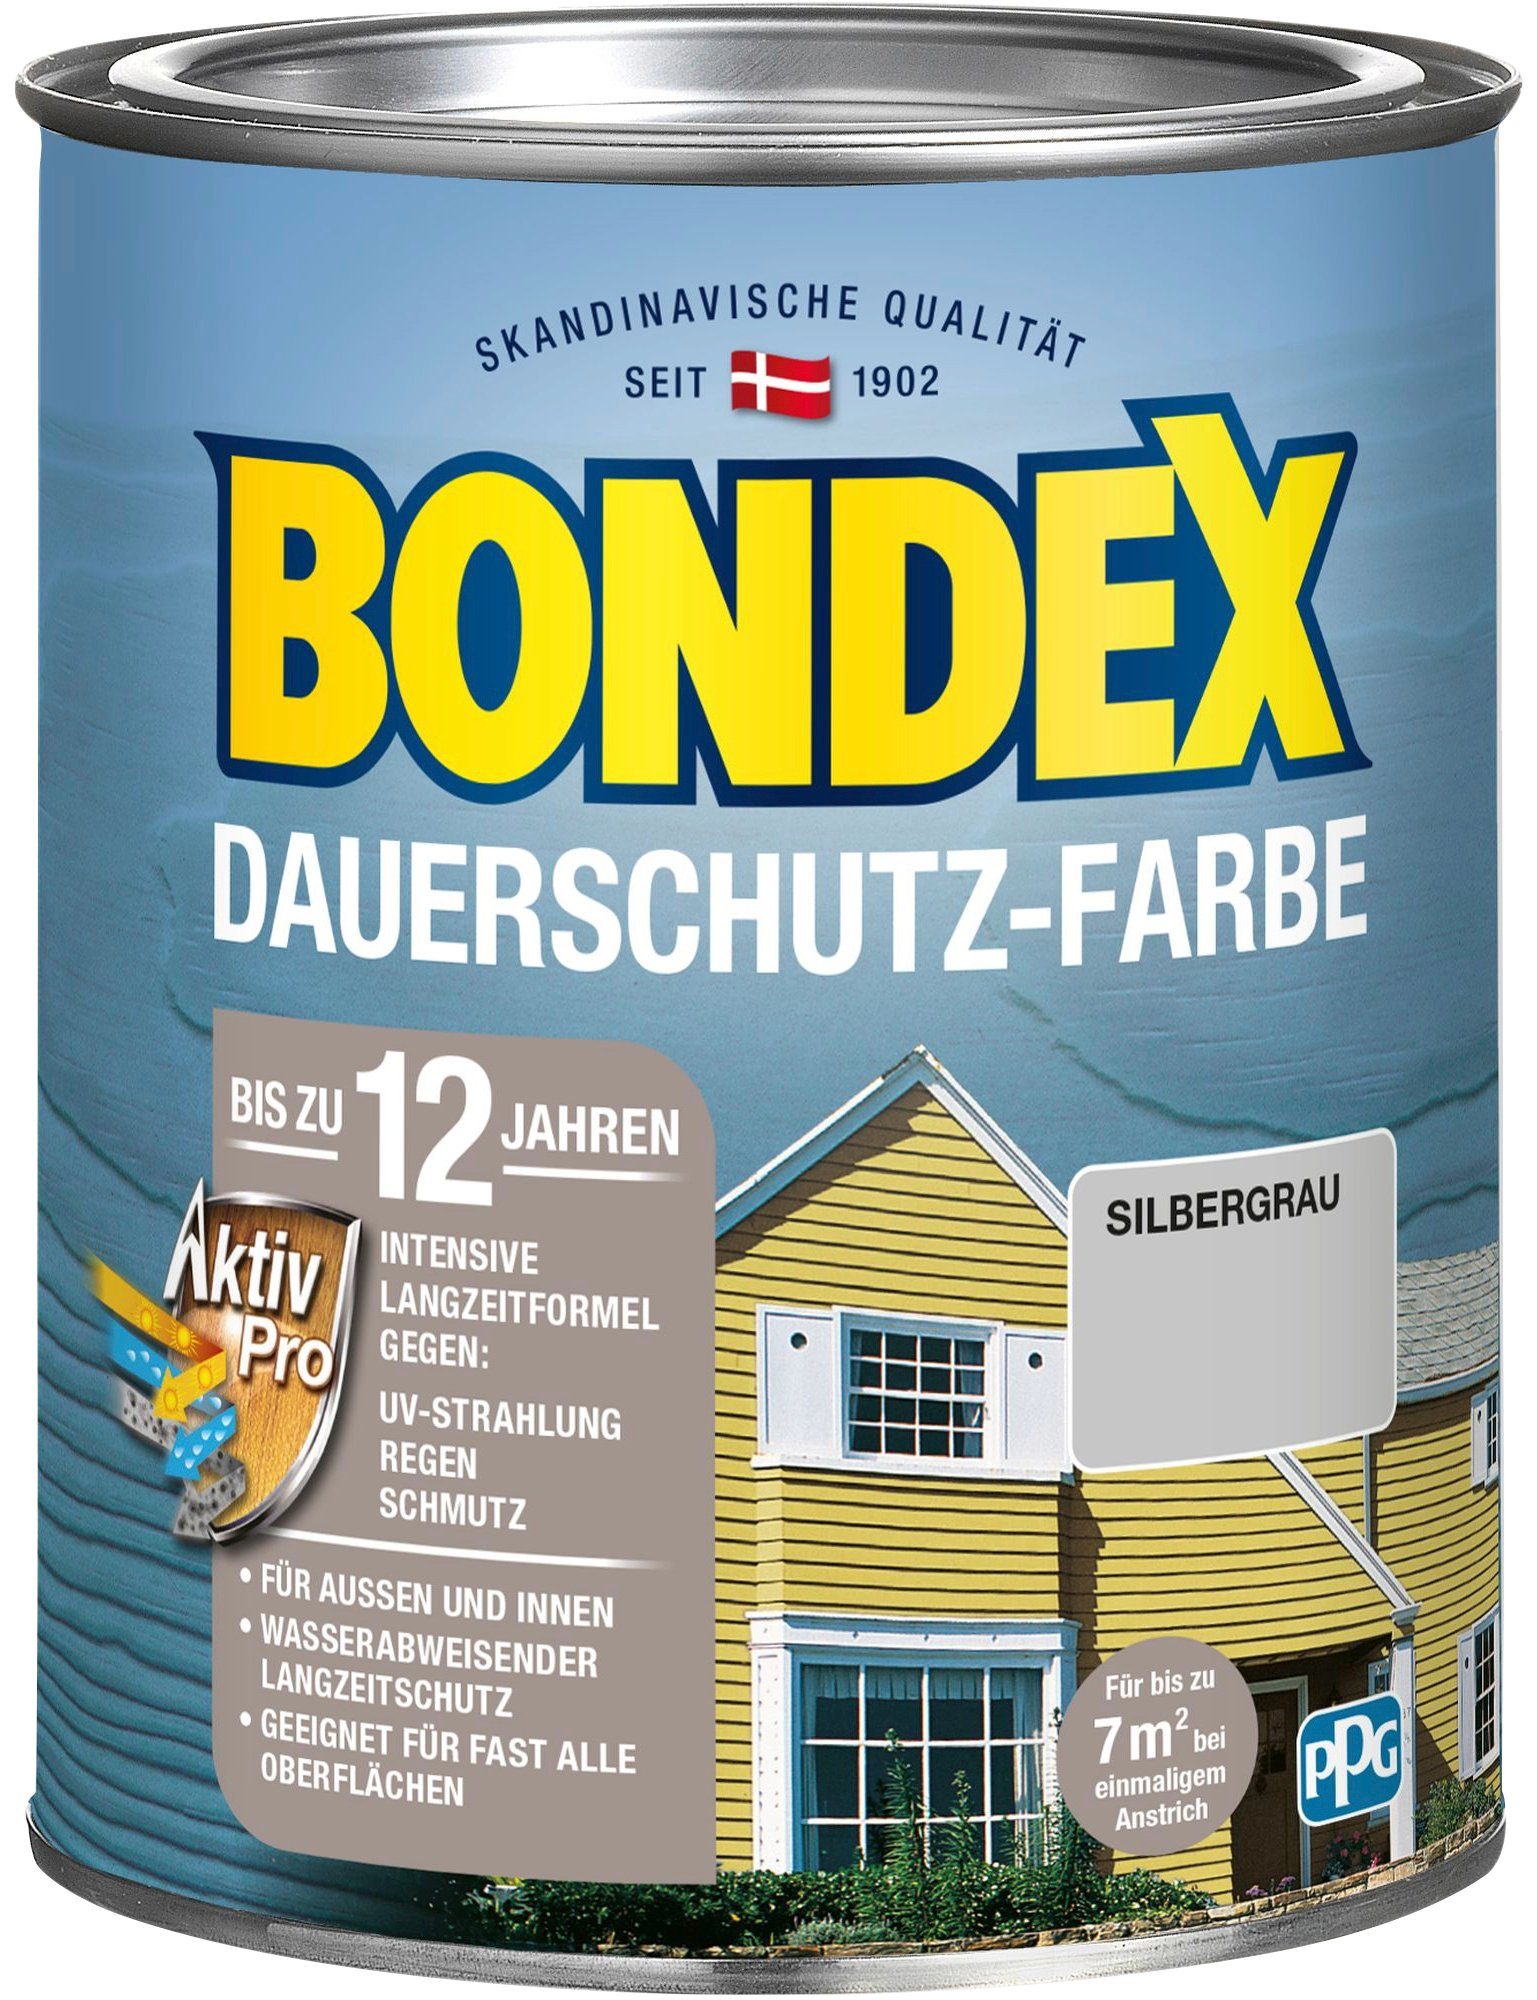 Bondex Wetterschutzfarbe DAUERSCHUTZ-FARBE, für Außen und Innen, Wetterschutz mit Aktiv Pro Langzeitformel silbergrau